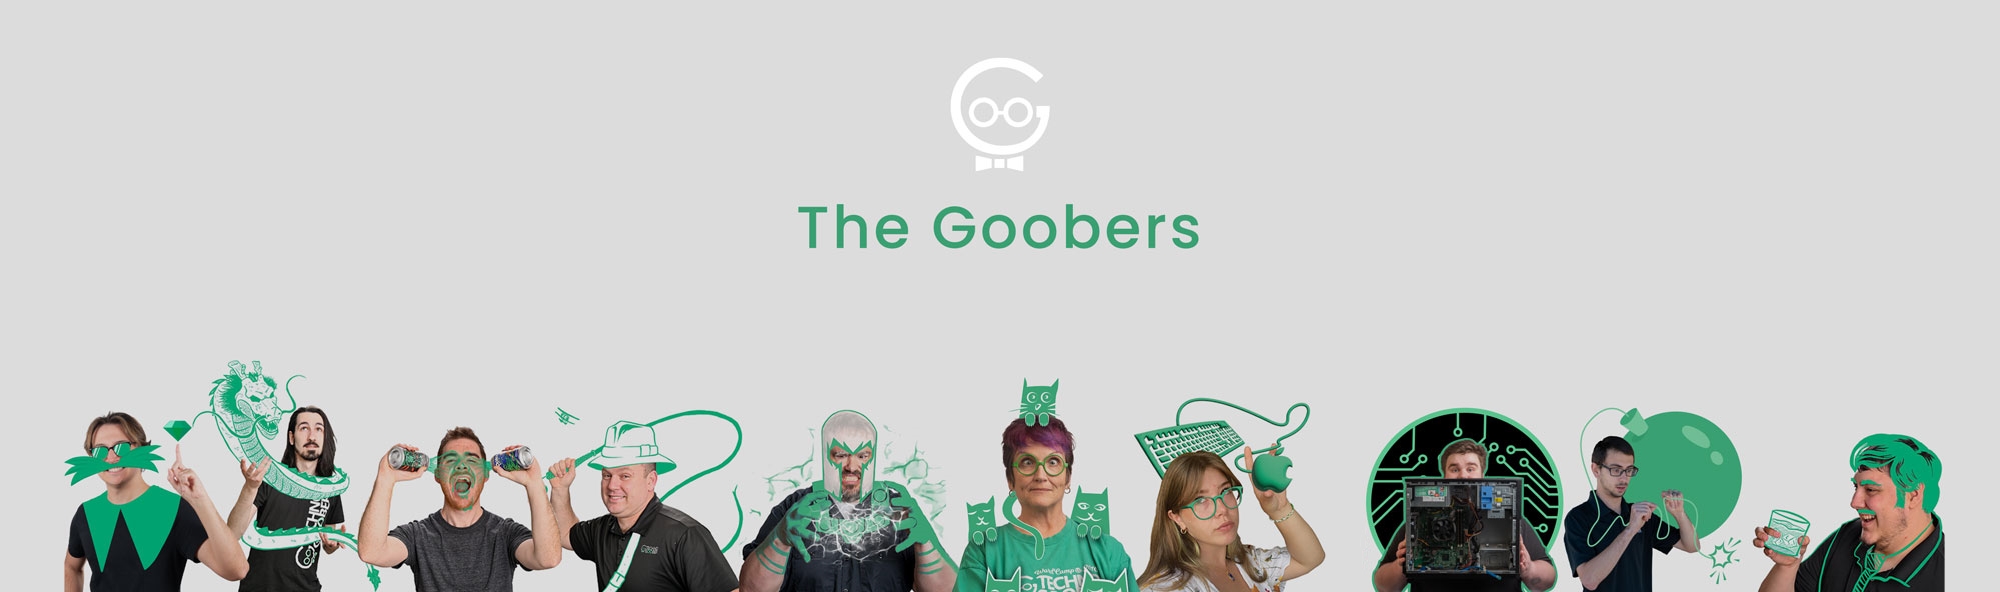 Goobers-Banner-copy3